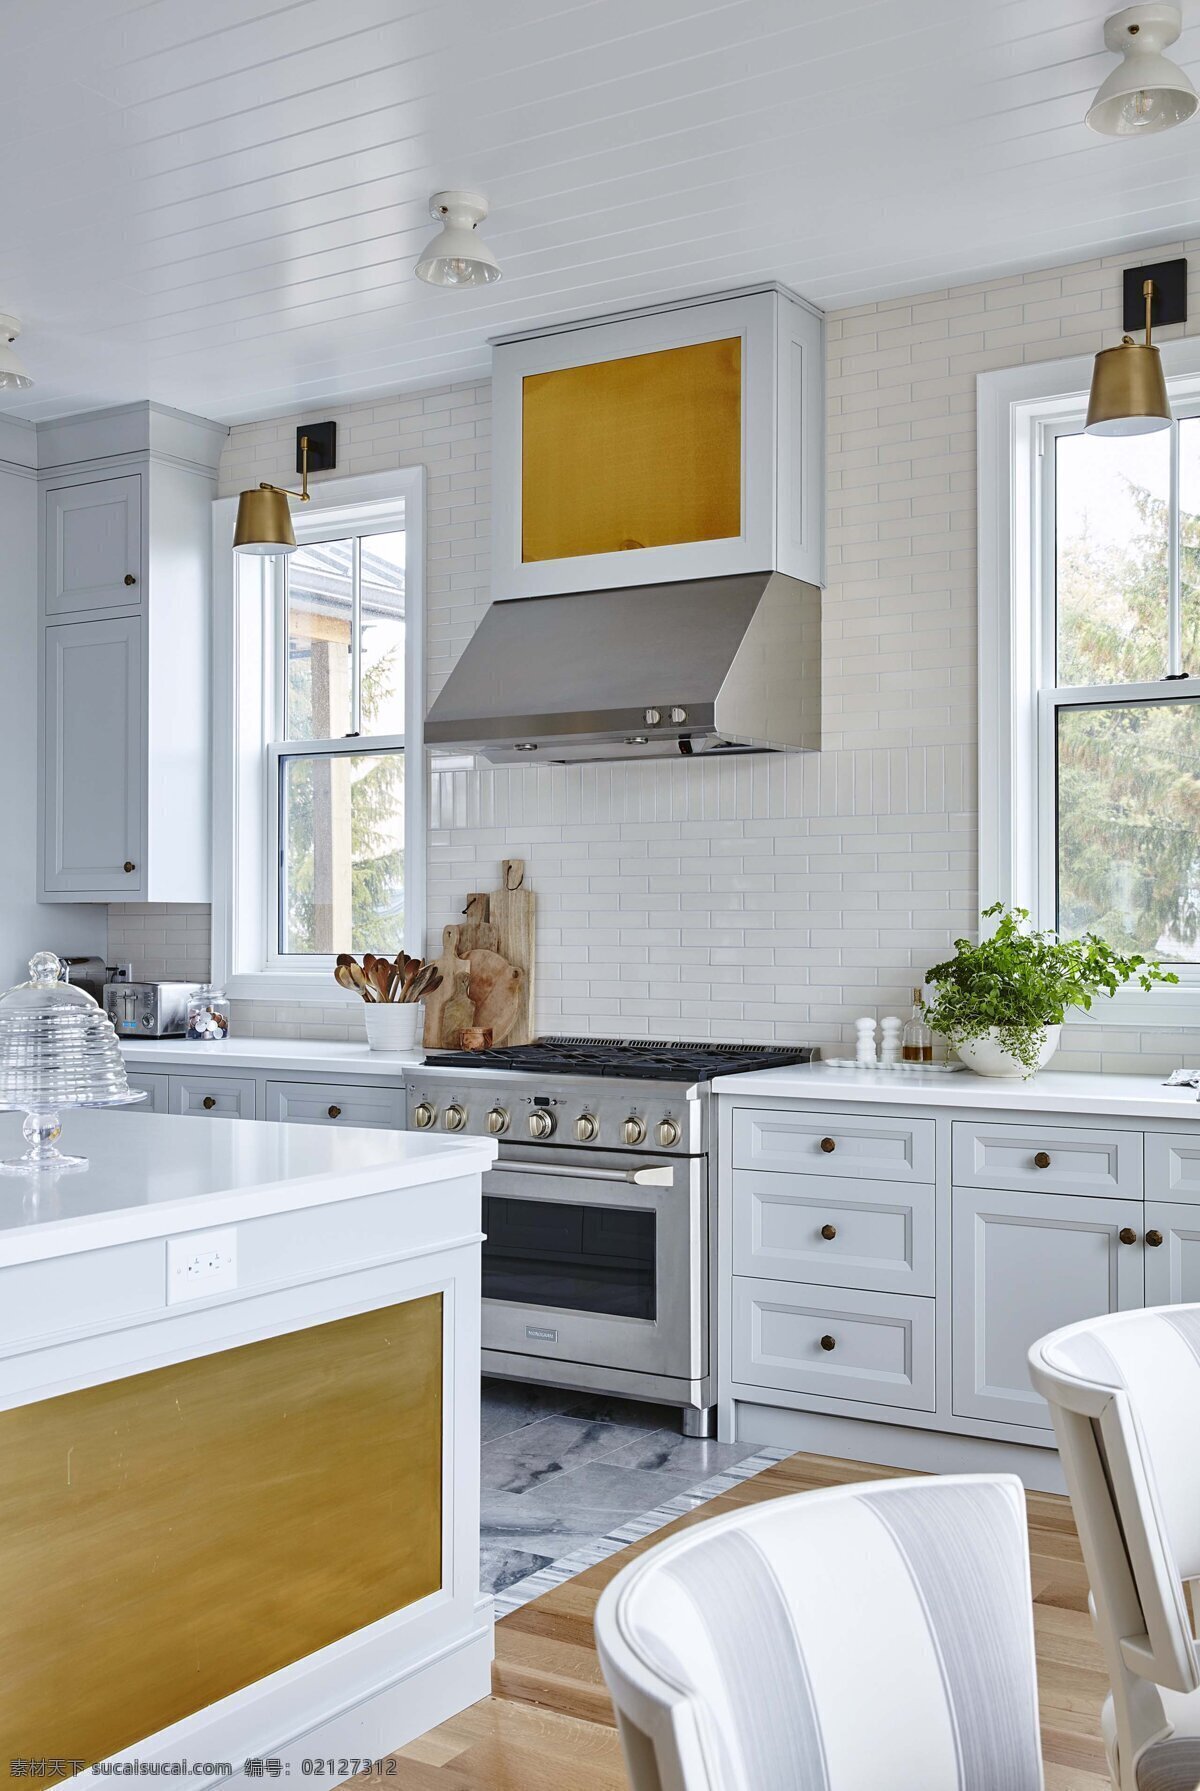 欧式 开放式 厨房 白色 抽油烟机 燃气炉 家装 效果图 室内设计 环境设计